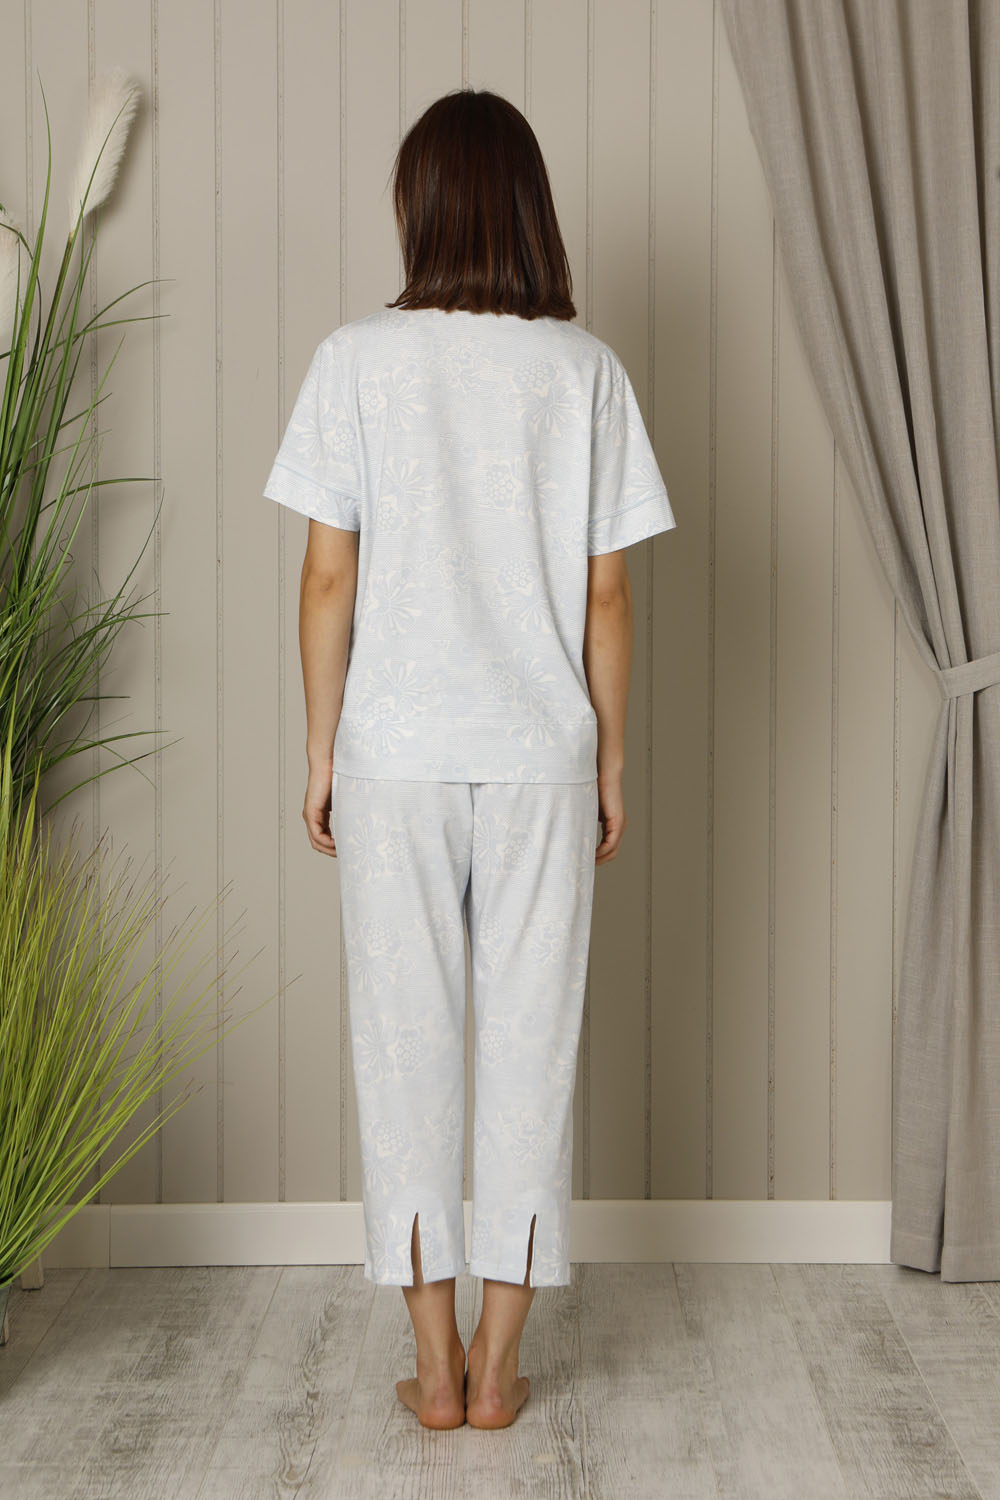 Hays Plus Size Kadın Baskılı Penye Midi Pijama Takımı